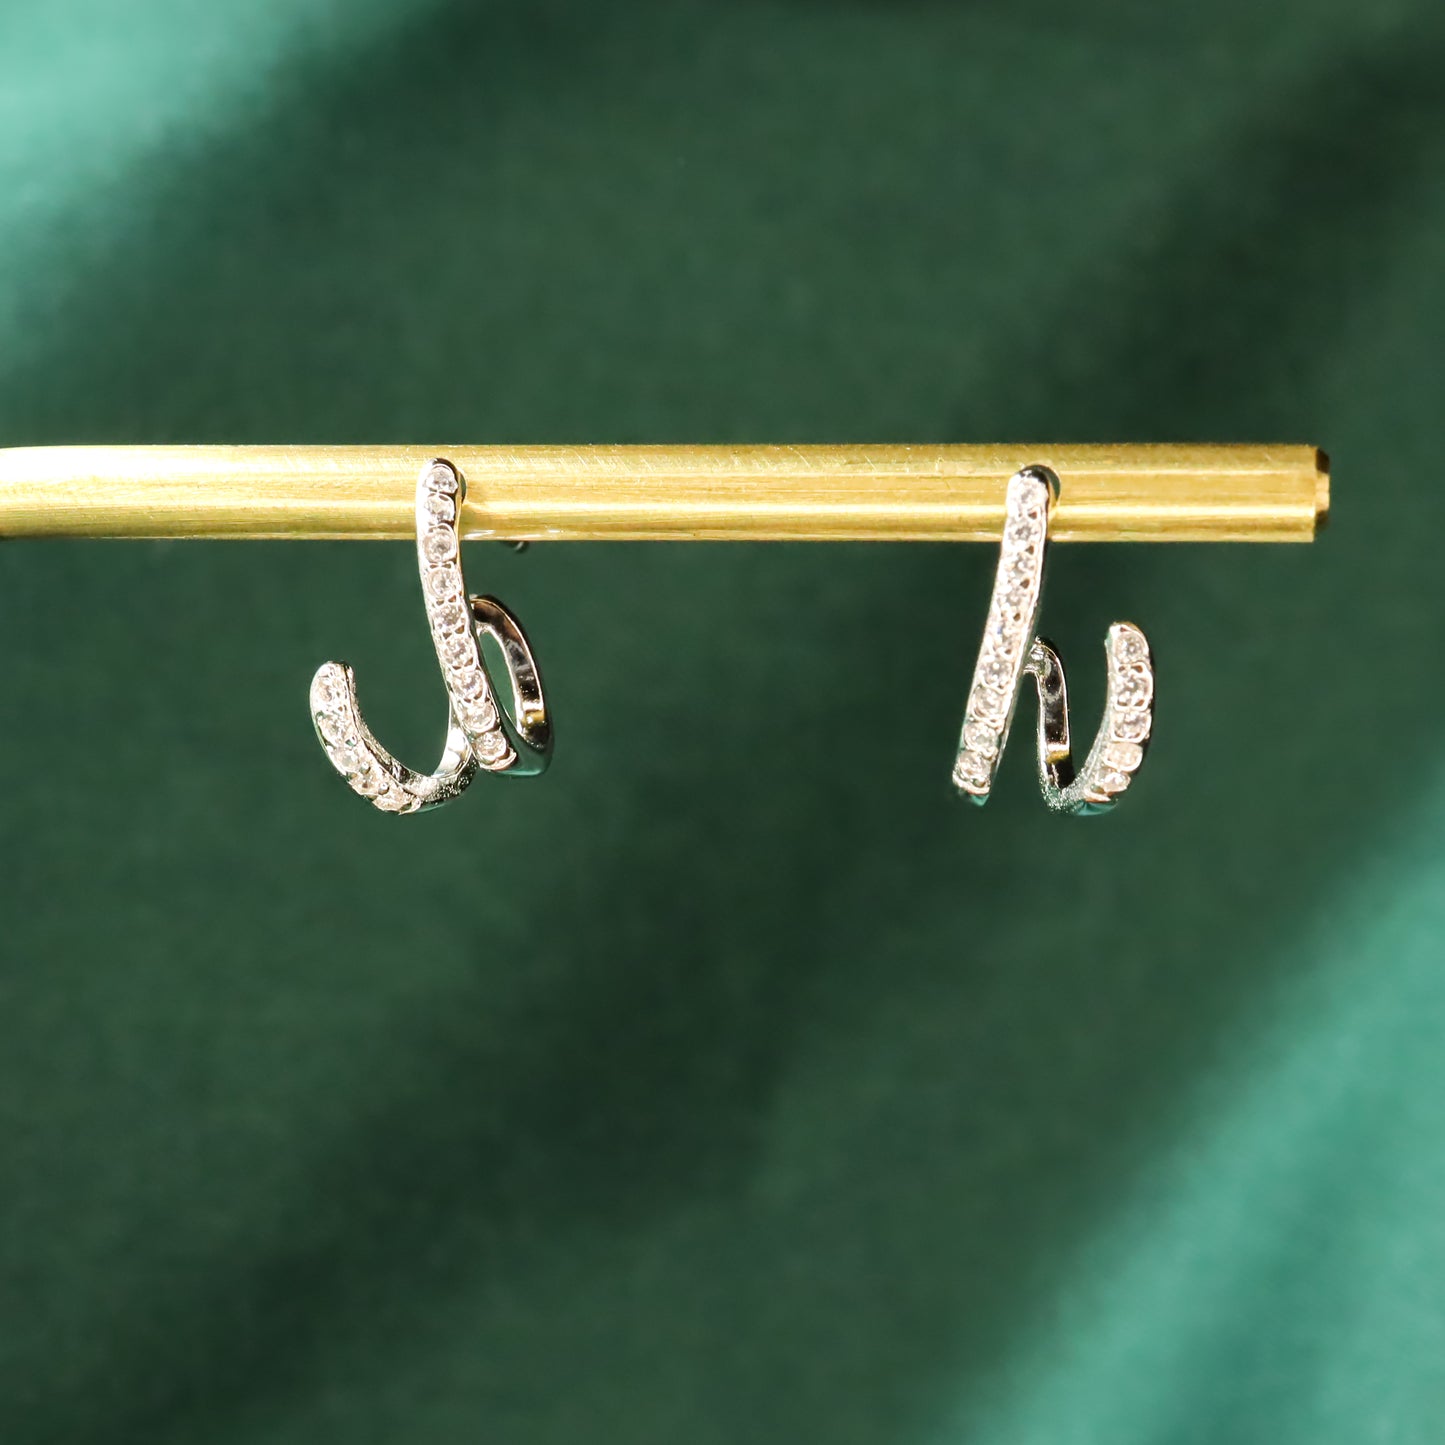 Twin Galaxy Shimmer - S925 Sterling Silver & Zircon Stud Earrings (Color: Silver)